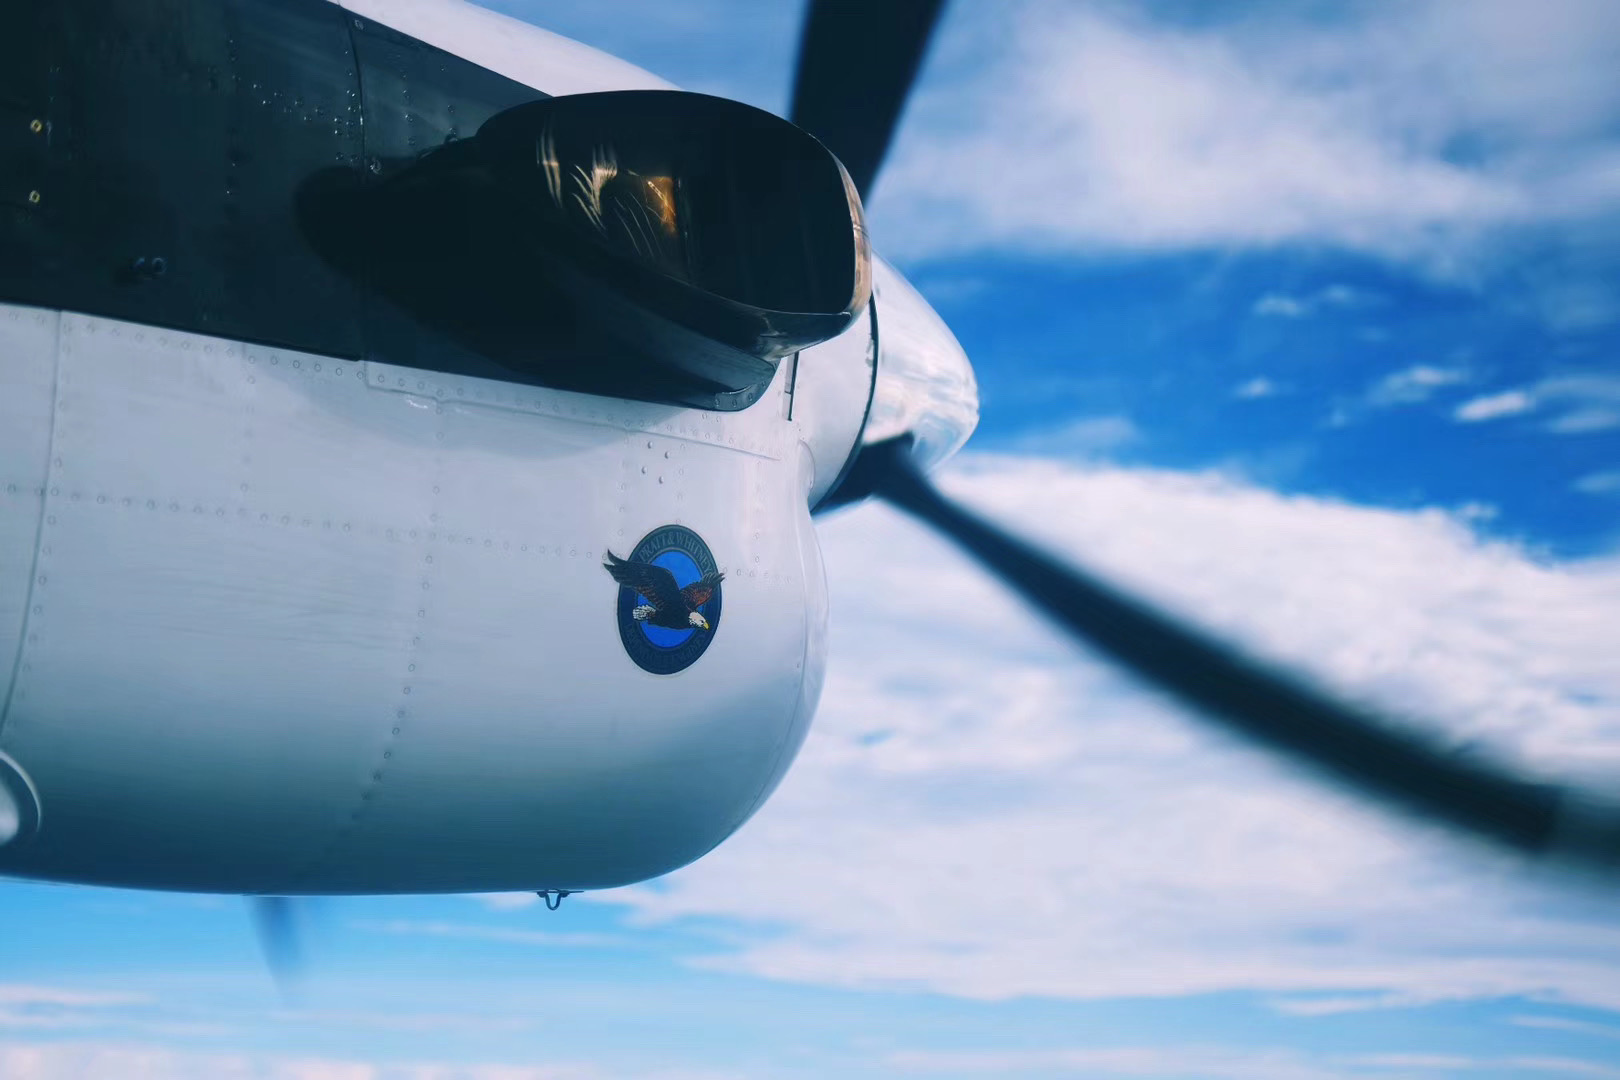 【南太平洋漂流记】 坐上19人小飞机，一路摇摇晃晃在听不见机长说话的轰鸣声中跨海来到瓦努阿岛。上飞机